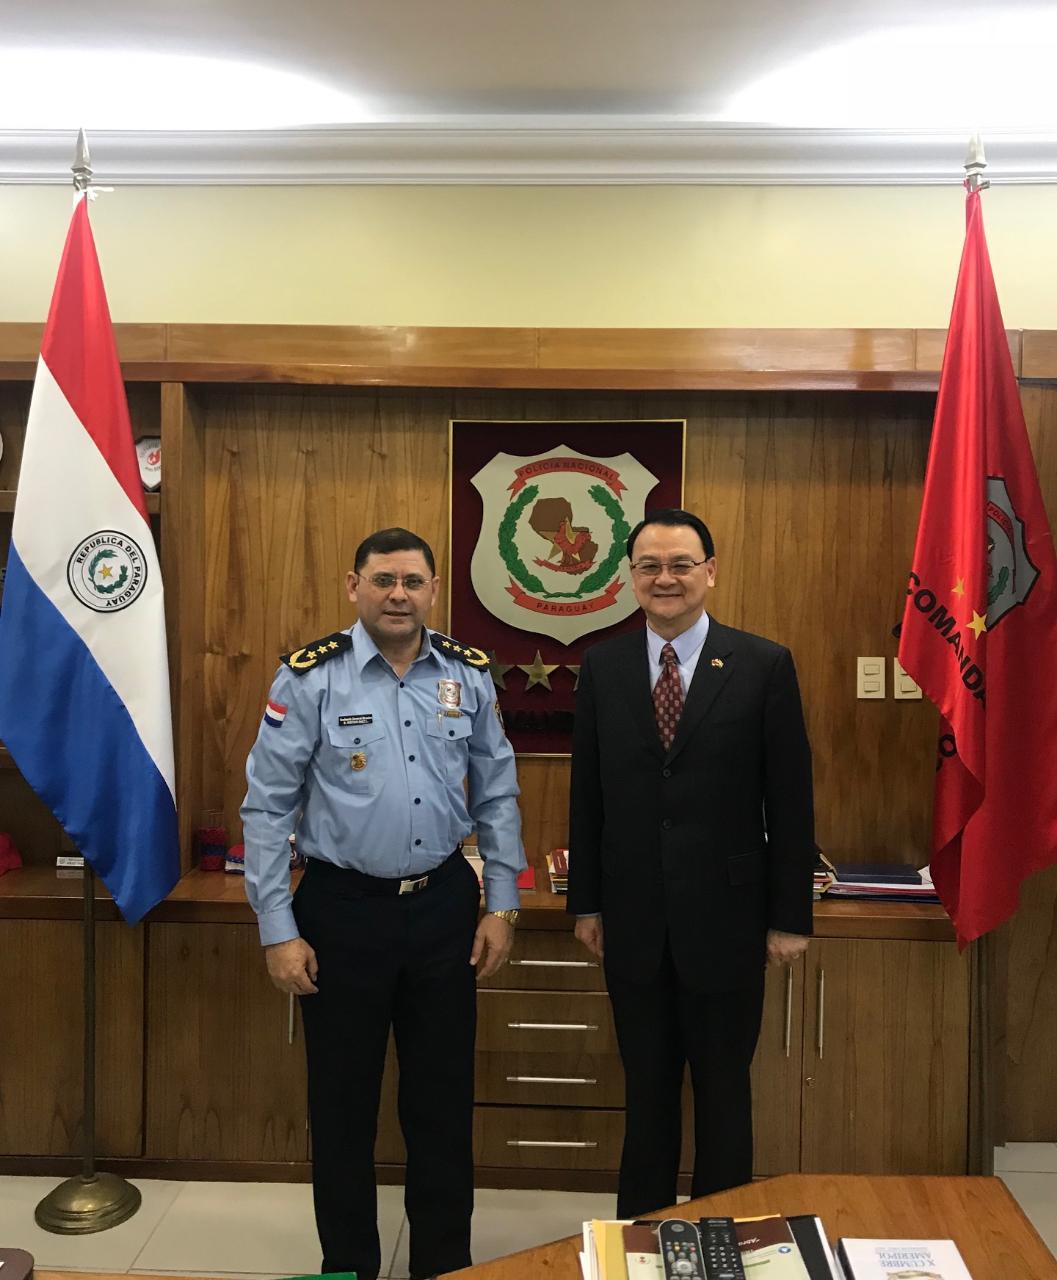 中華民國駐巴拉圭周大使麟於本(9)月5日上午前往內政部警政署拜會新任警察總監巴埃茲(Bartolomé Báez)